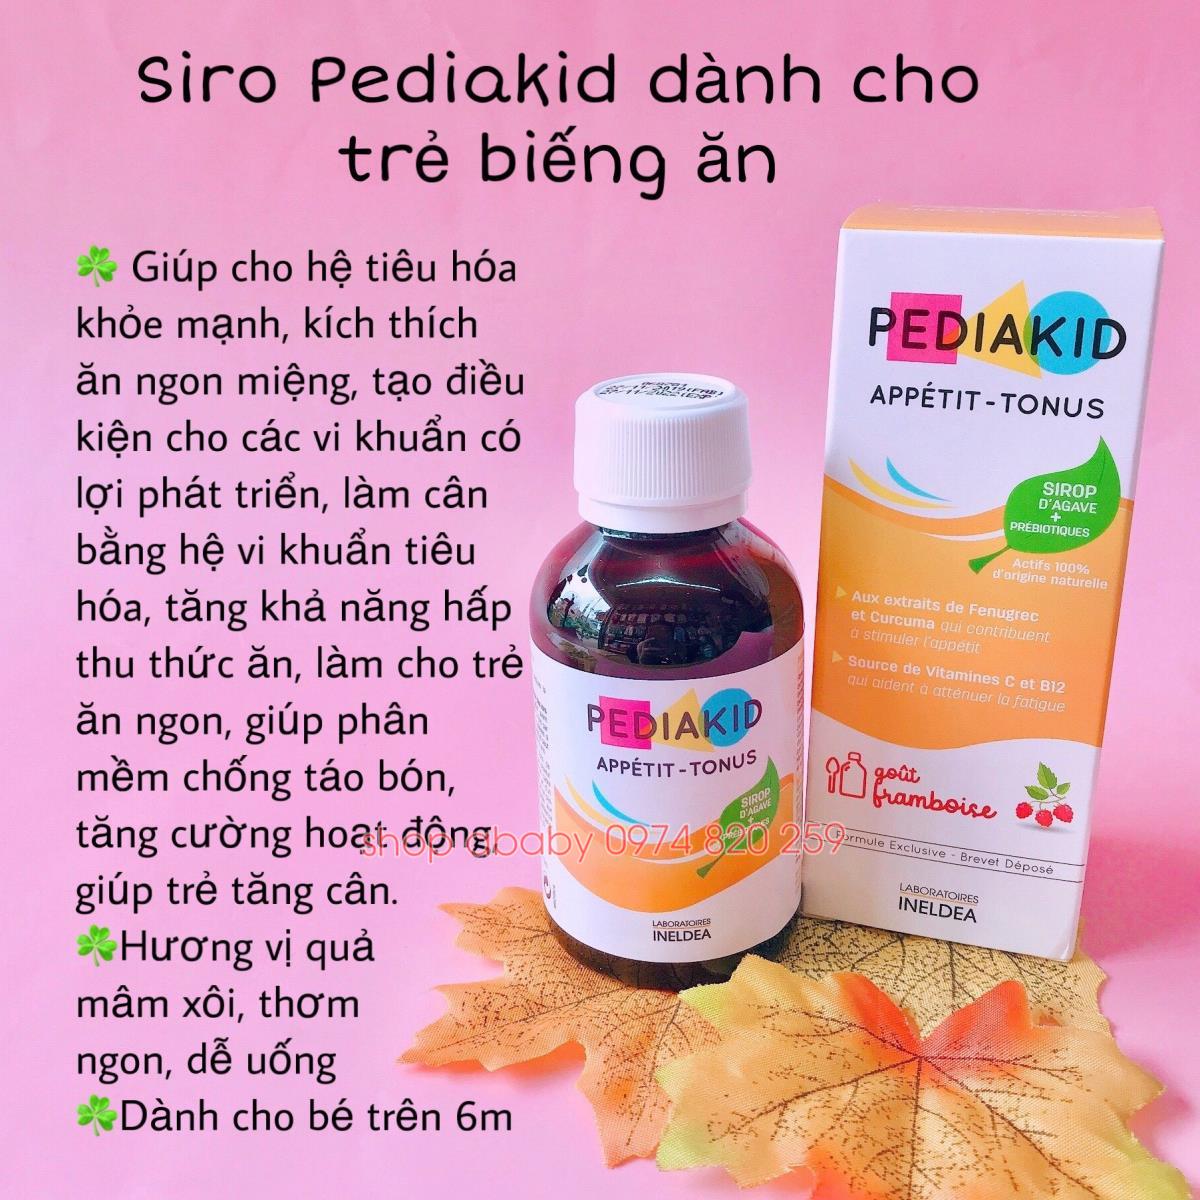 Siro Pediakid dành cho trẻ biếng ăn (>6m) | Vitamin,Thực phẩm chức năng